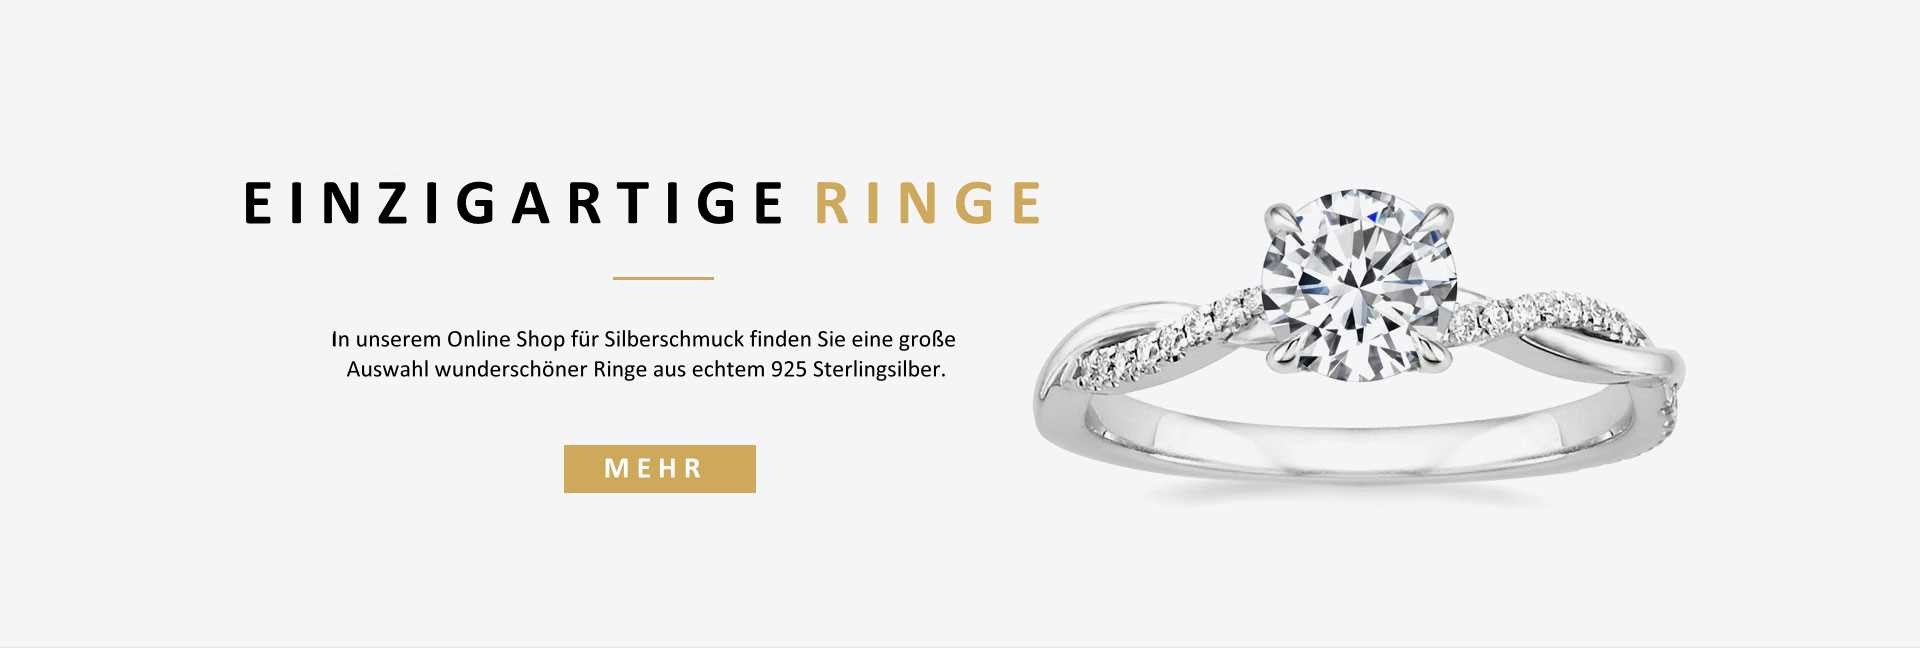 In unserem Online Shop für Silberschmuck finden Sie eine große Auswahl wunderschöner Ringe aus echtem 925 Sterlingsilber.